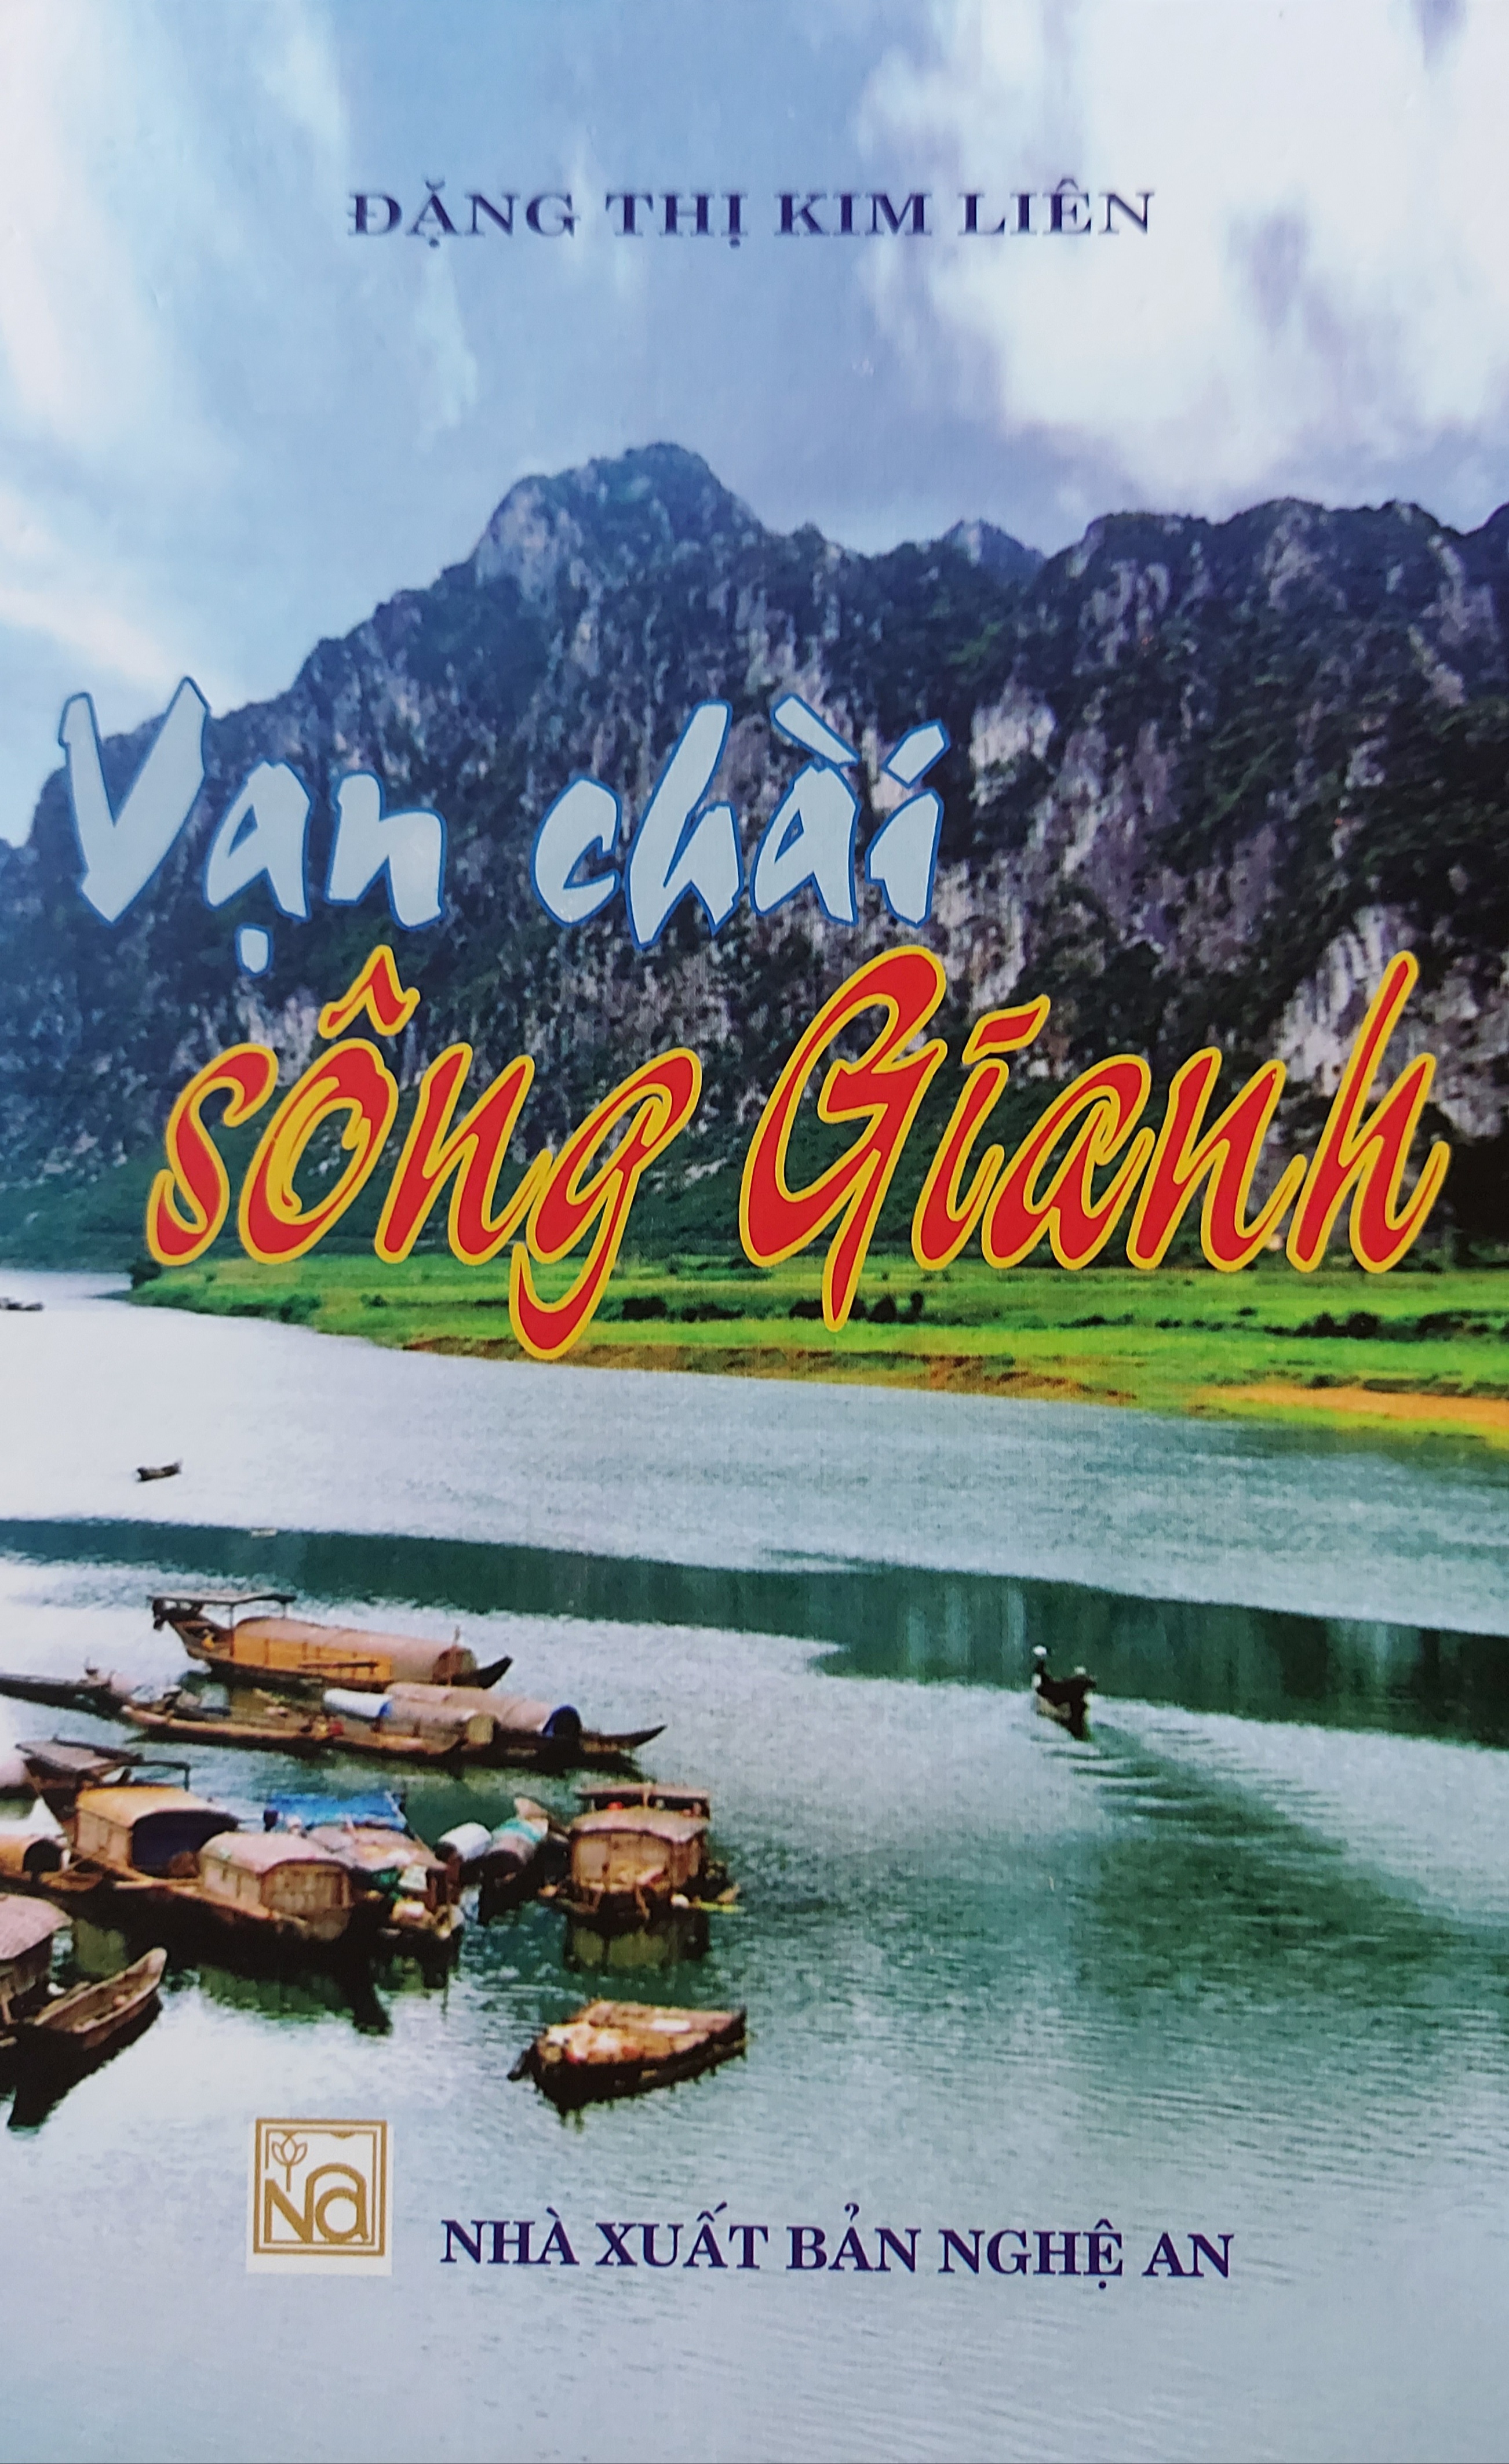  “Vạn chài sông Gianh”, công trình nghiên cứu văn hóa, văn nghệ dân gian mới nhất của tác giả Đặng Thị Kim Liên.